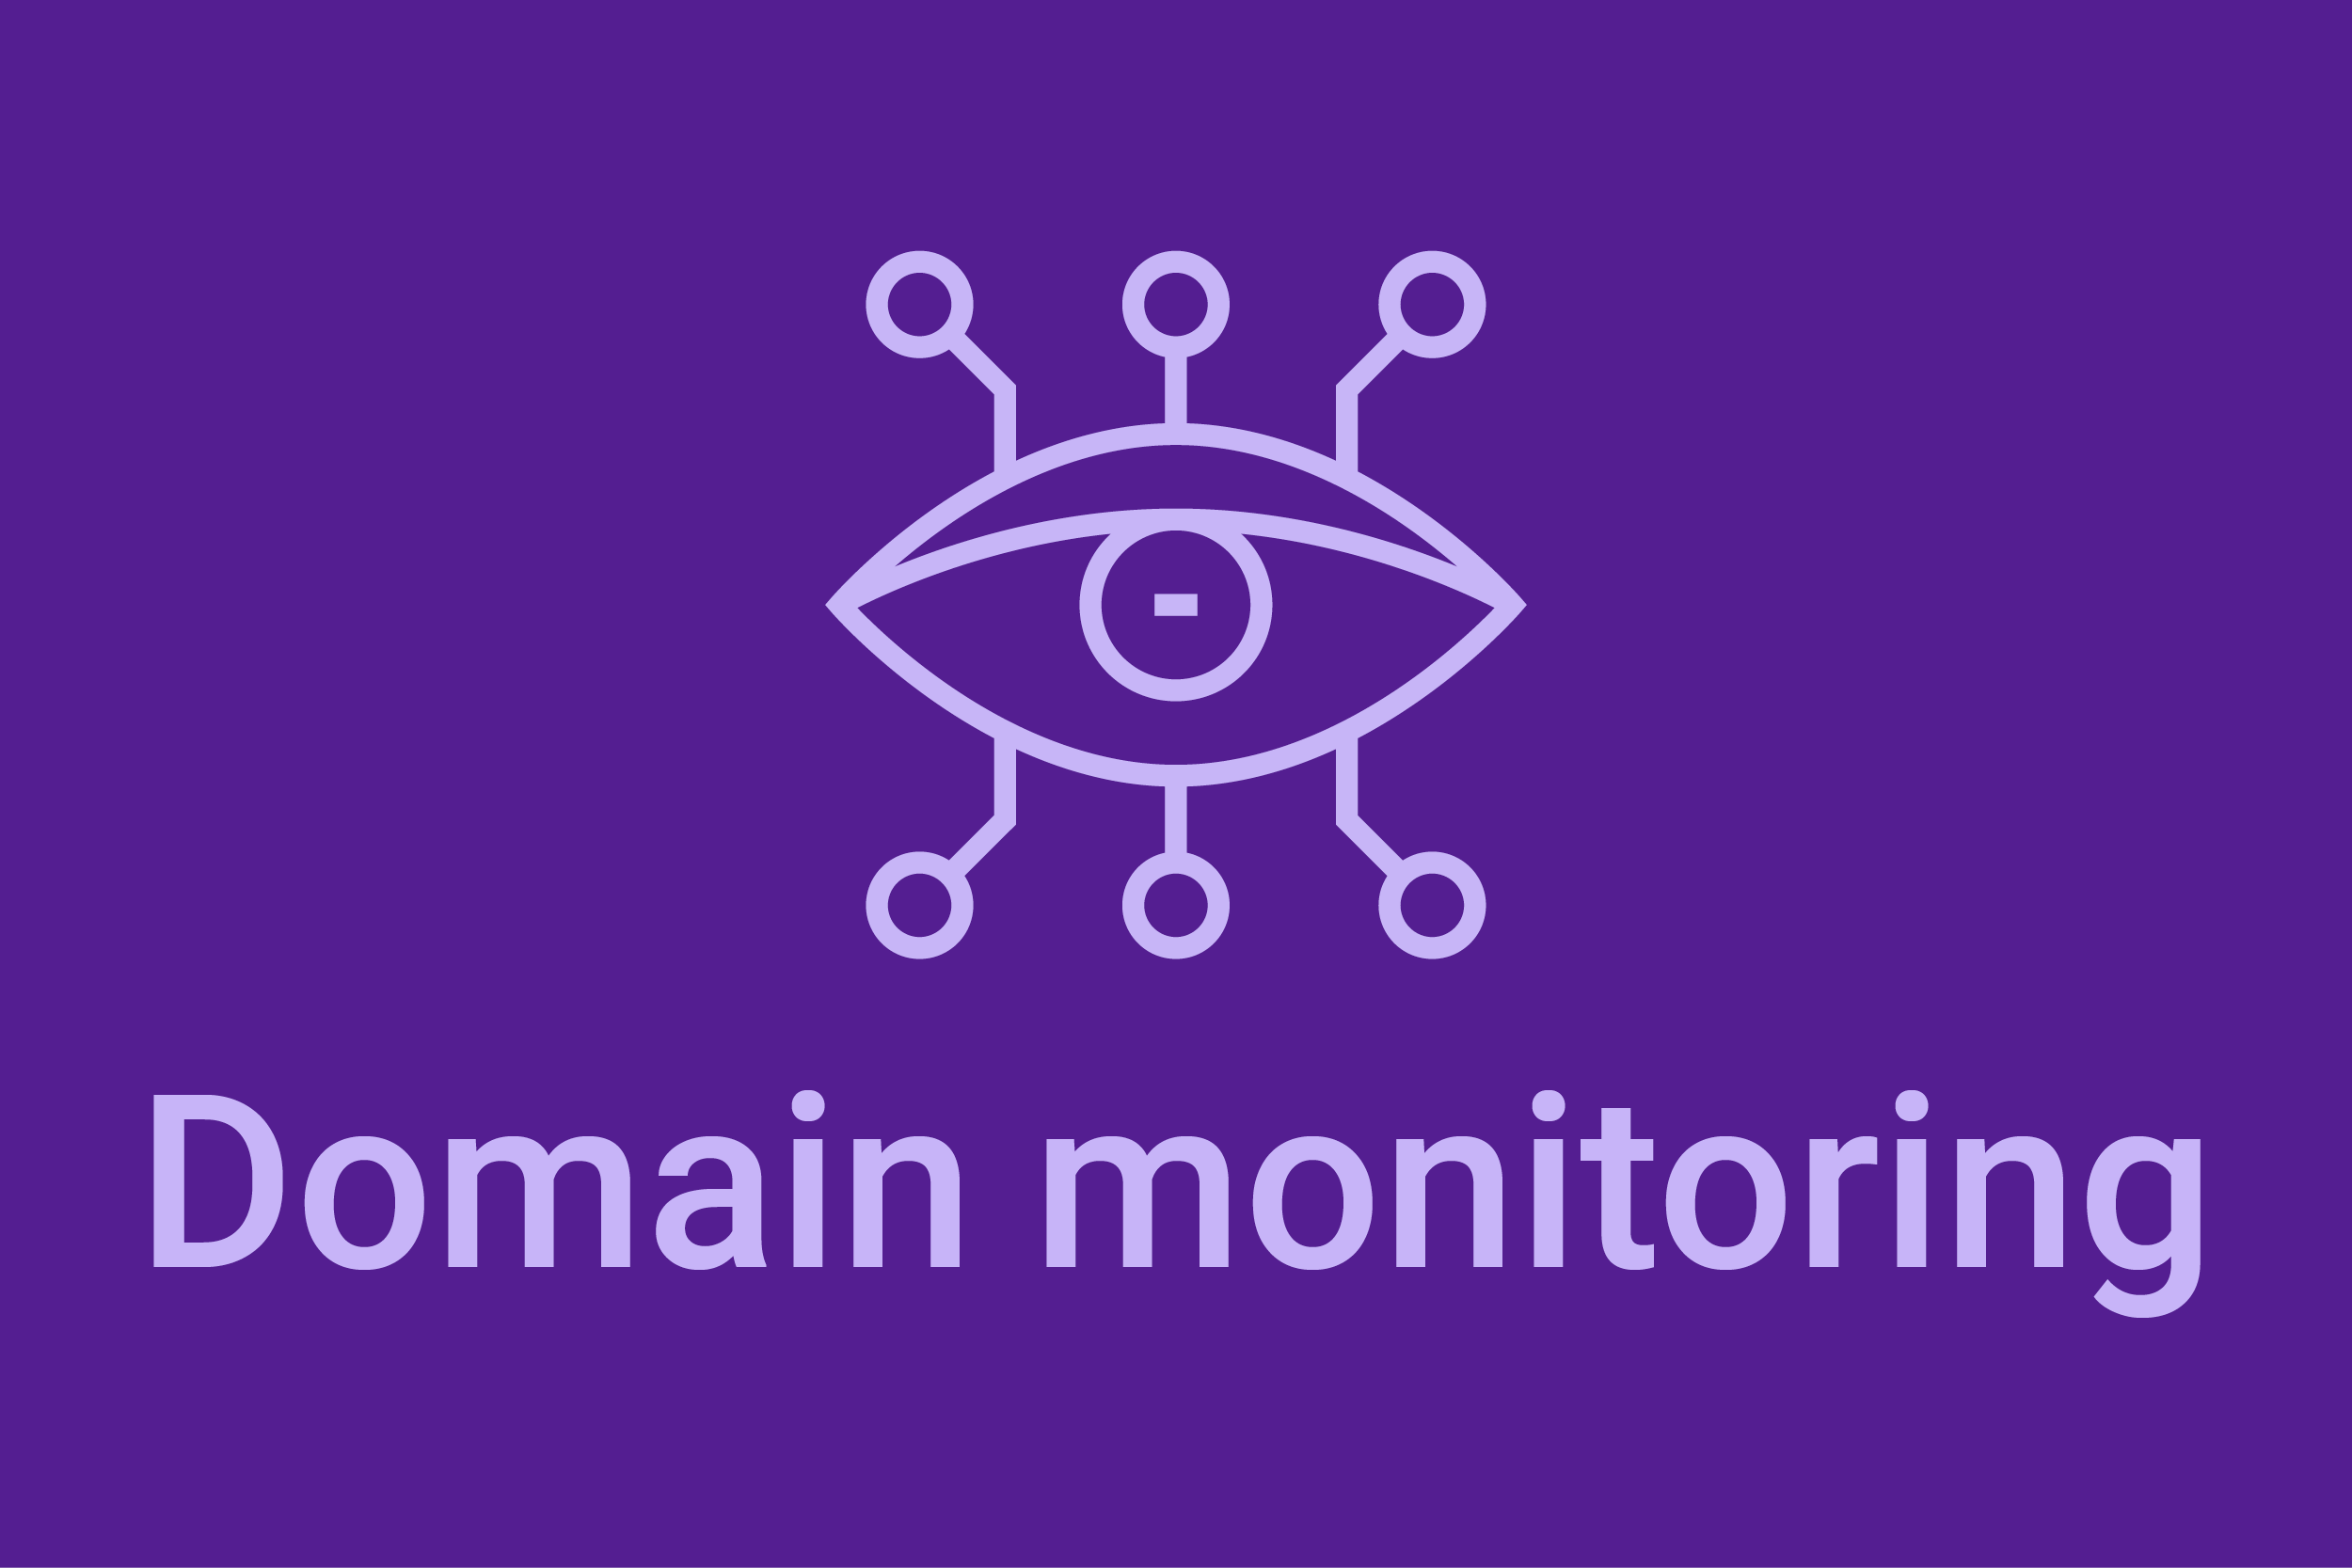 Domain monitoring